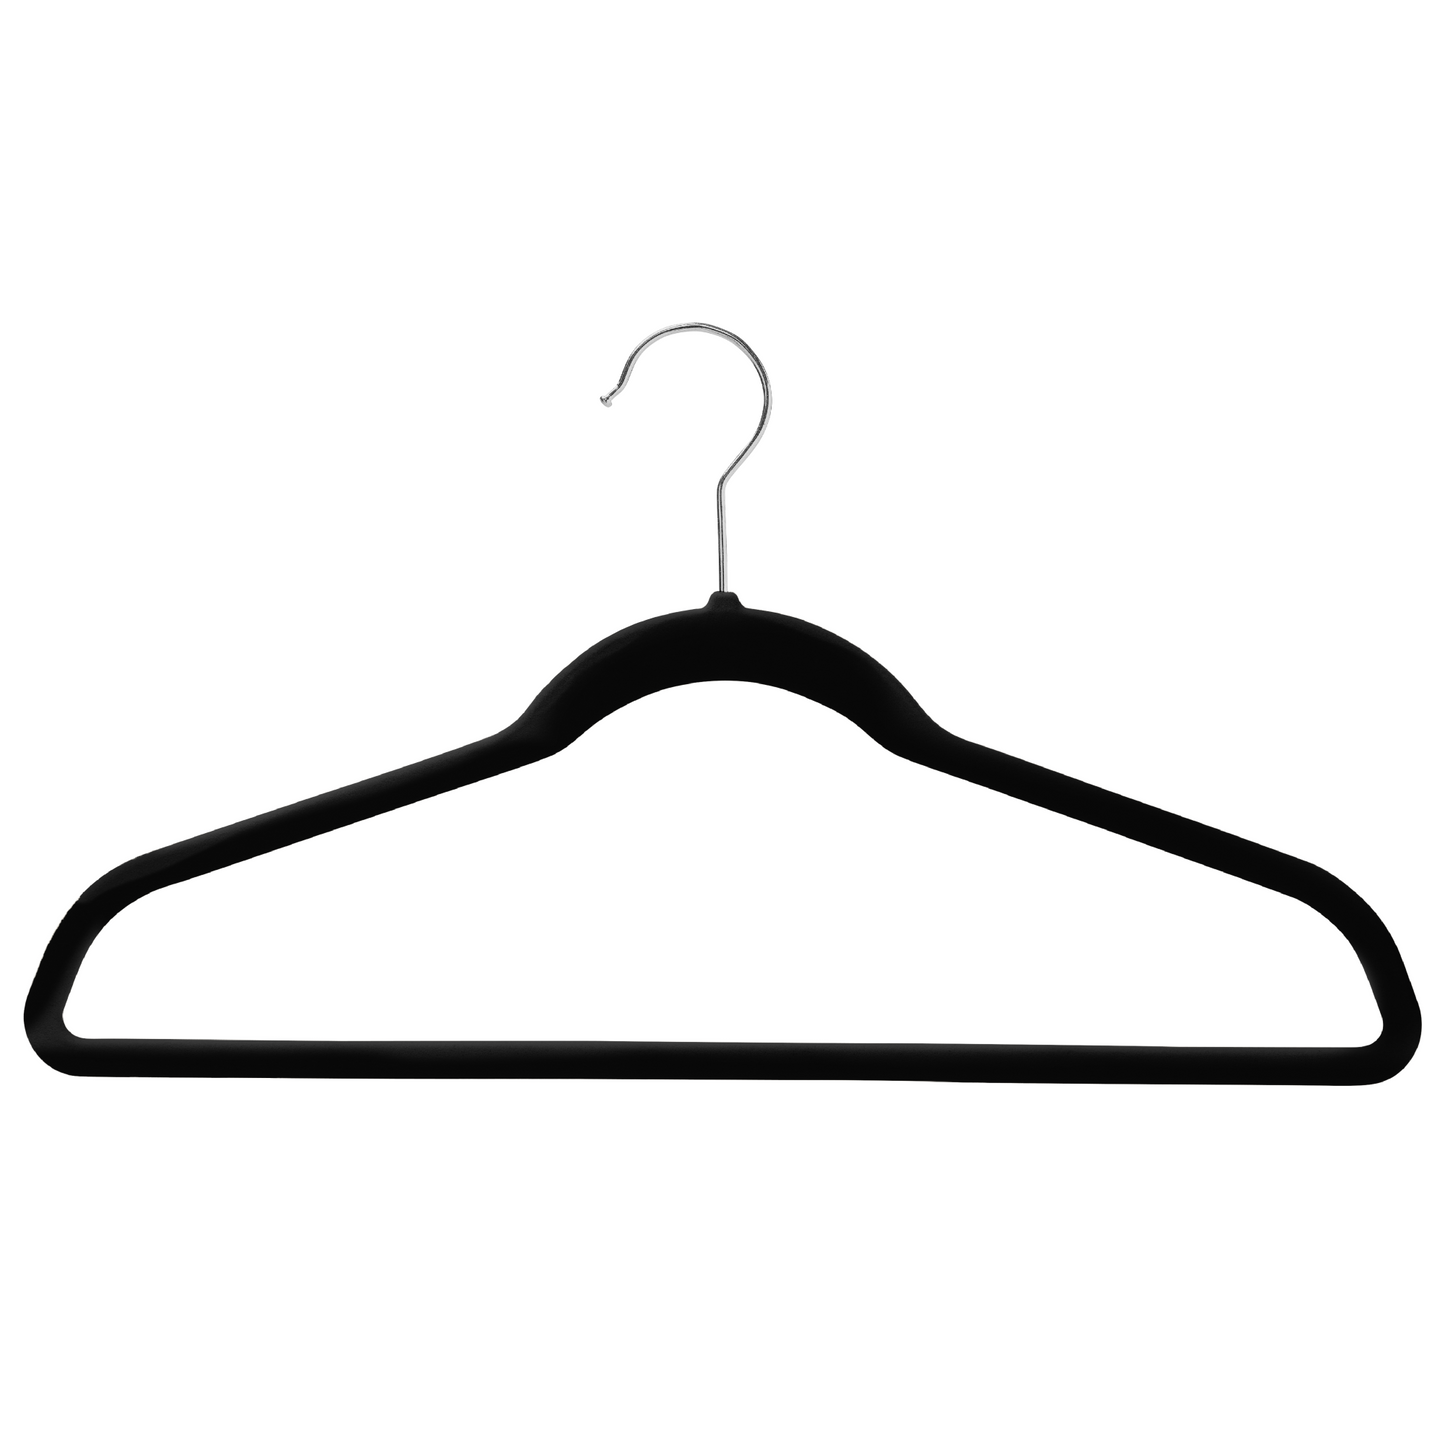 43cm Slim-Line Black Velvet Coat Hanger with Chrome Hook Sold in Bundles of 20/50/100 - Rackshop Australia